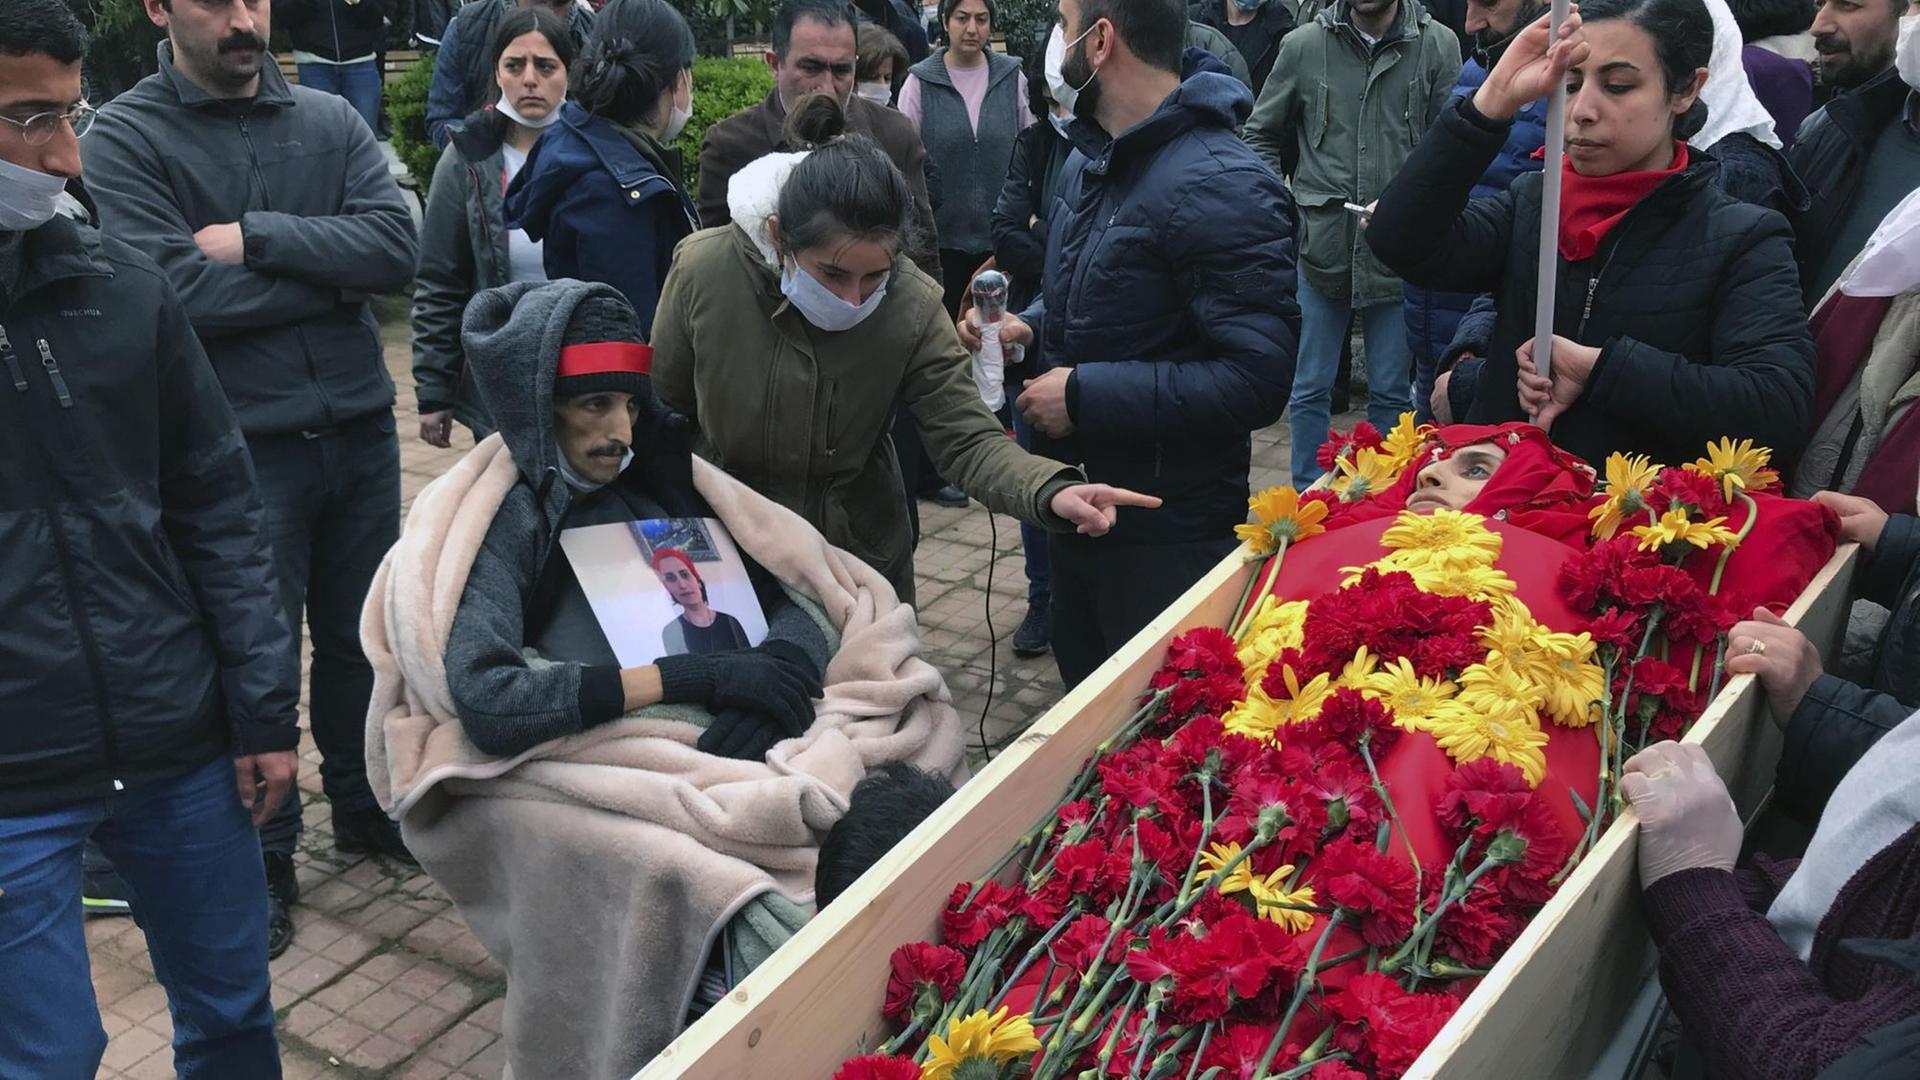 Trauernde Menschen am offenen Sarg der türkischen Sängerin Helin Bölek der Grup Yorum.